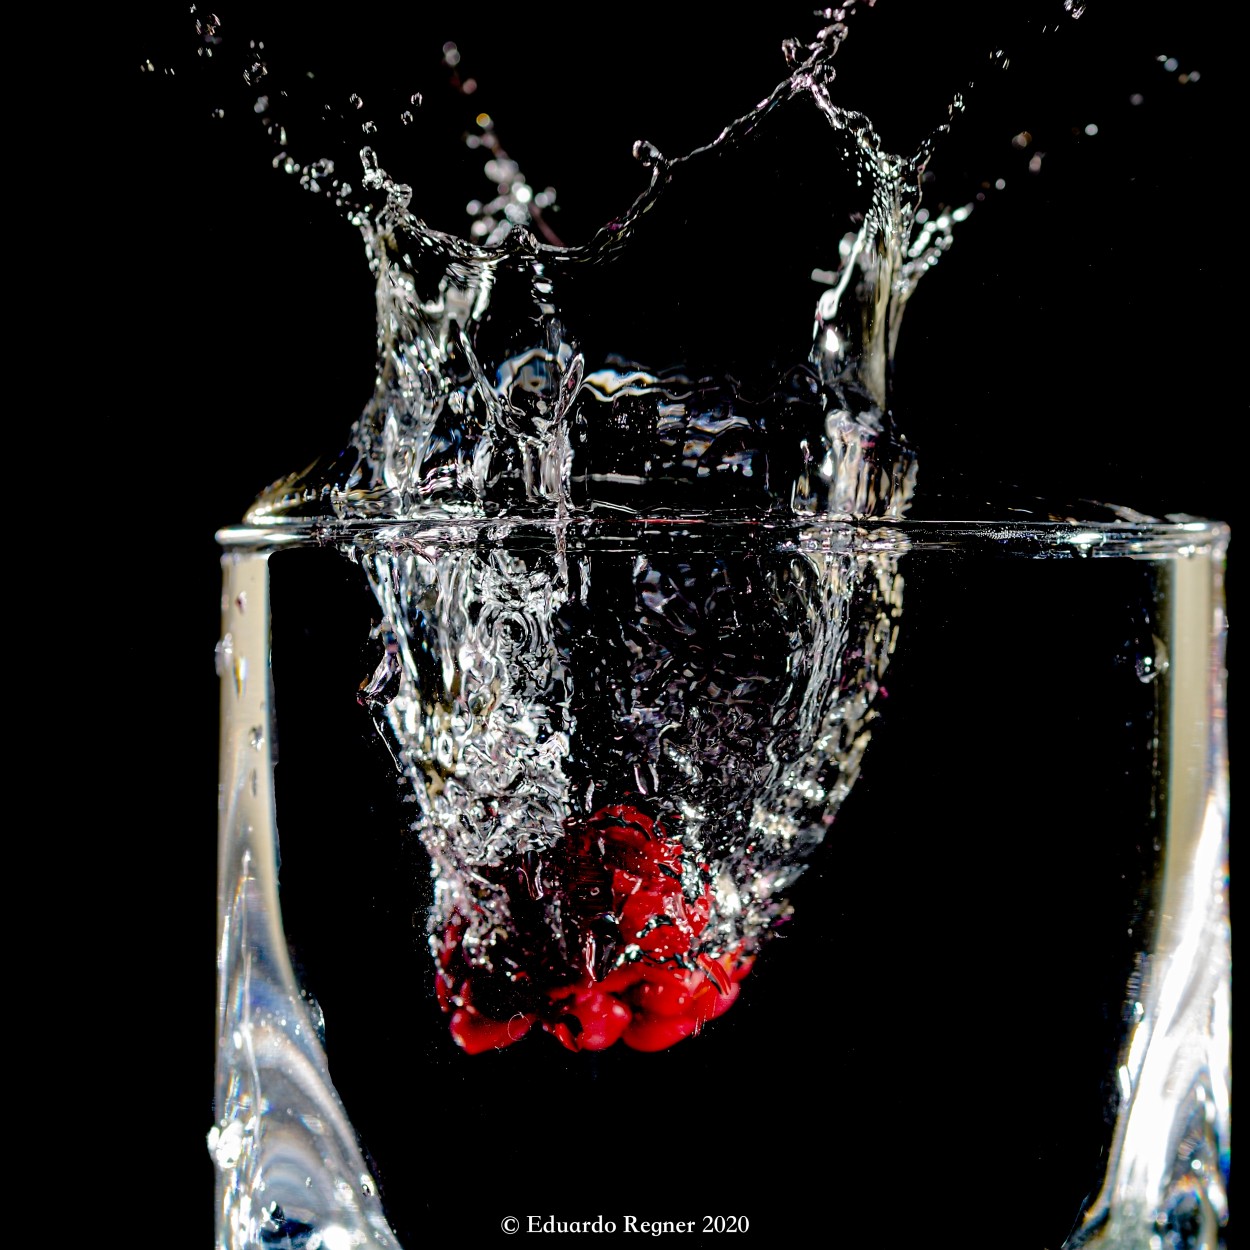 "Splash de frambuesa en vaso" de Eduardo Regner